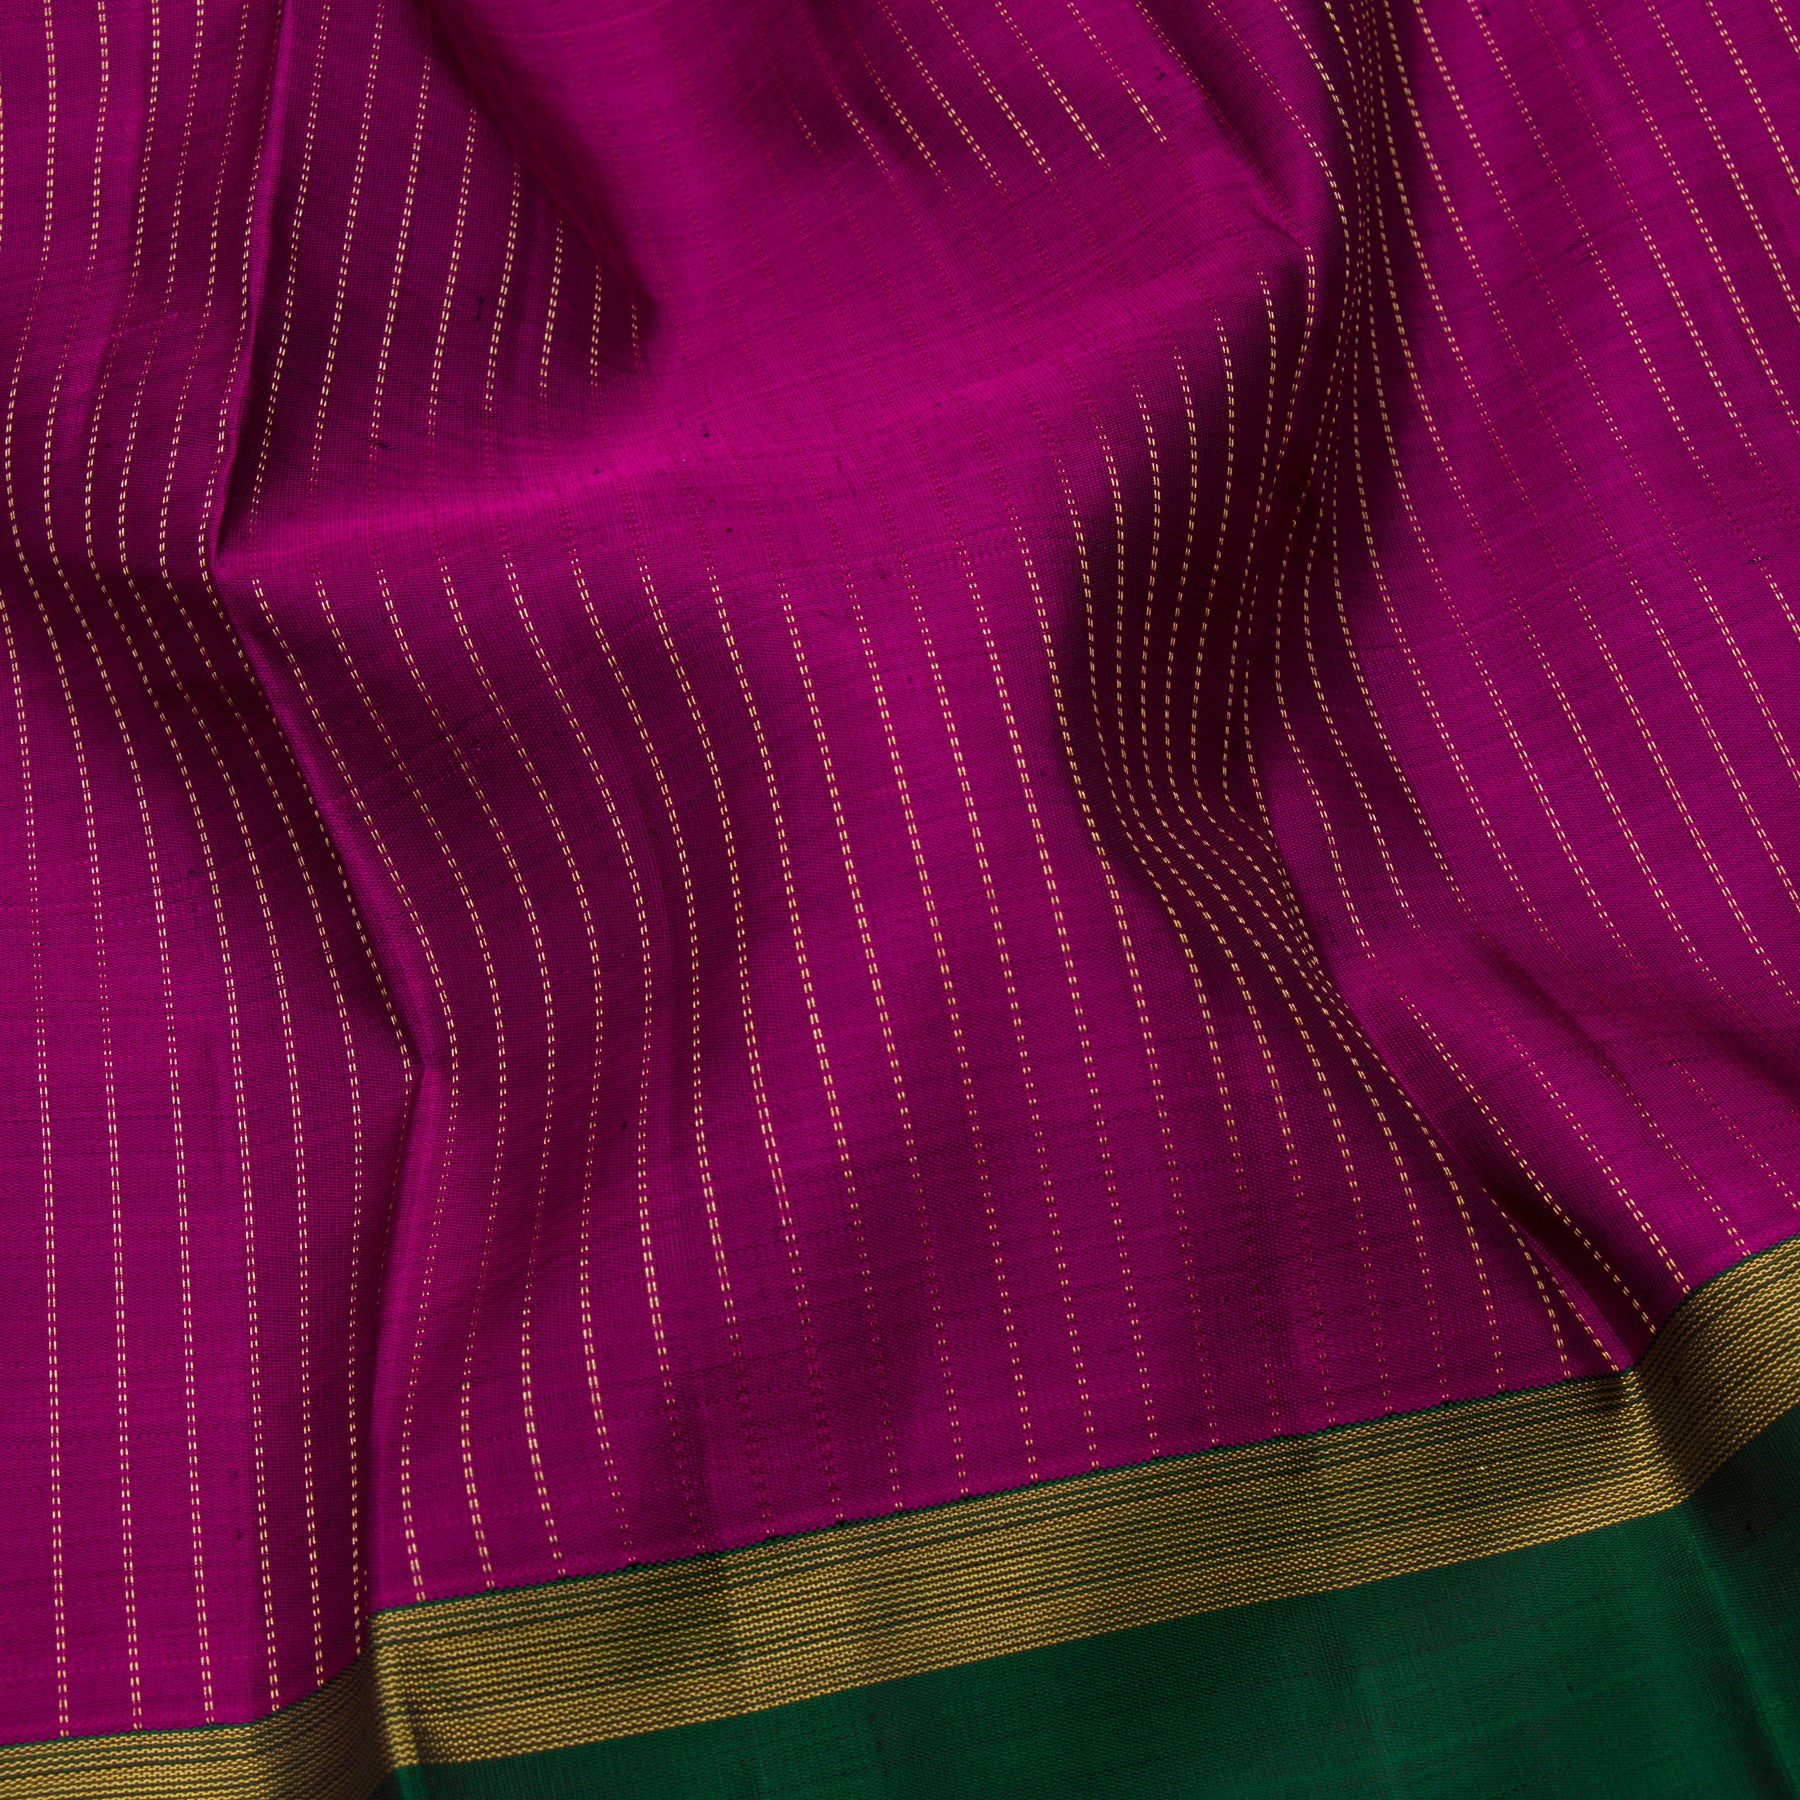 Kanakavalli Kanjivaram Silk Sari 23-599-HS001-11864 - Fabric View